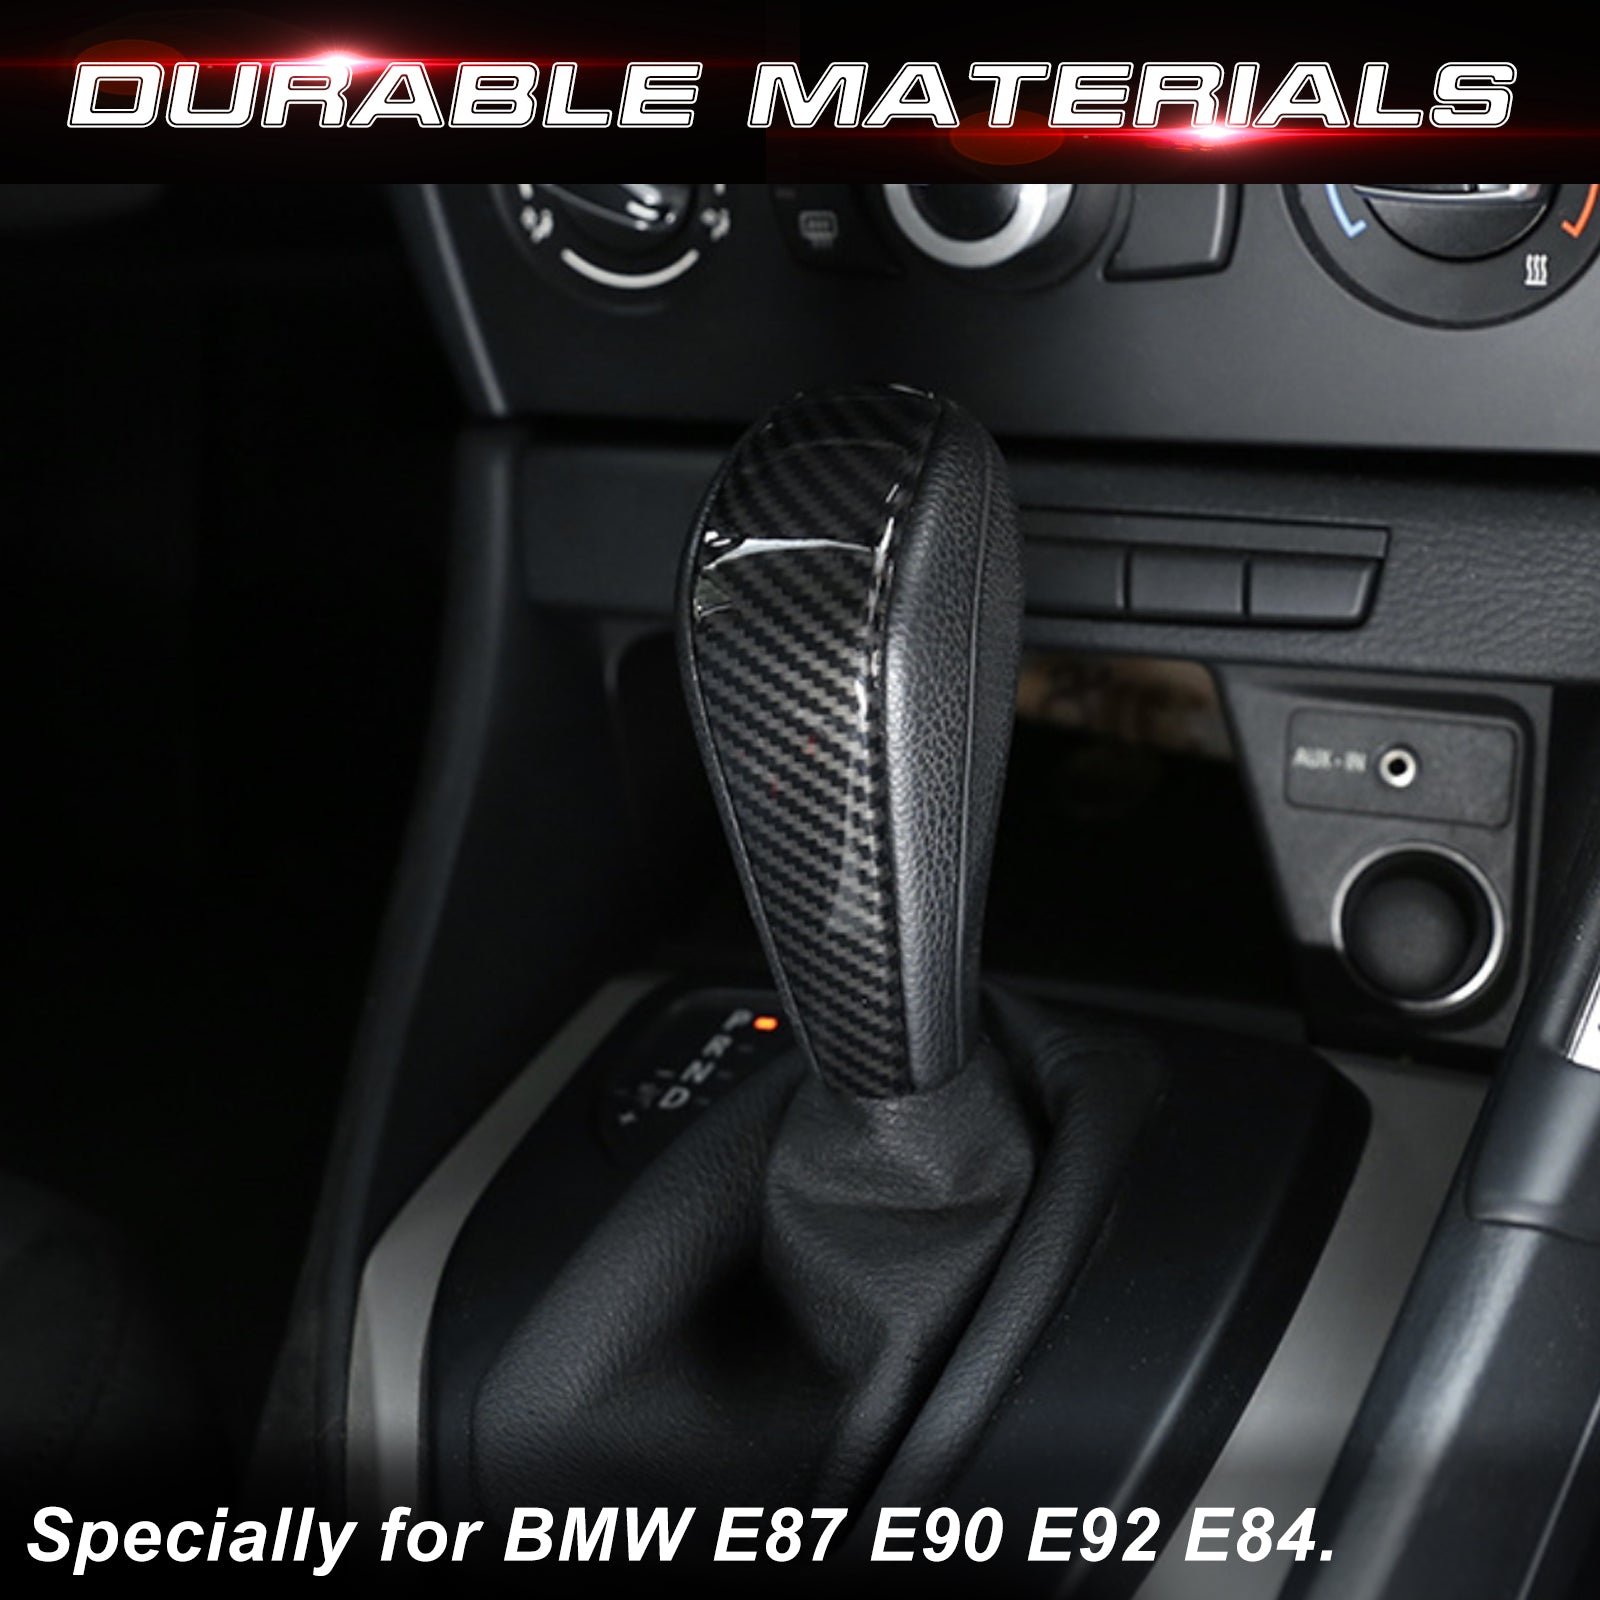 Pinalloy Carbon Fiber Shift Knob Control Panel for BMW E90/E92/E93 3 S